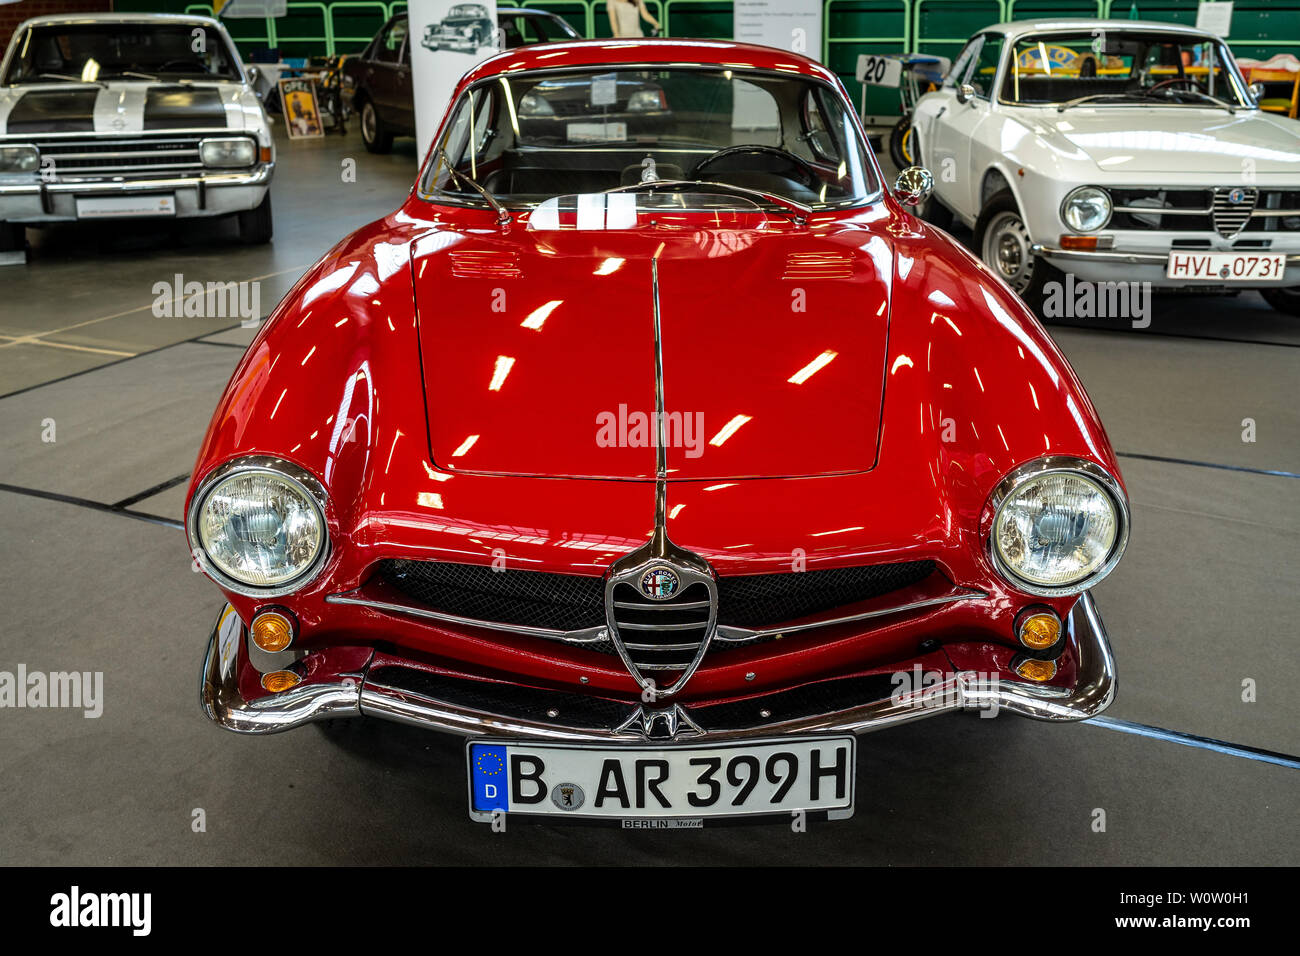 PAAREN IM GLIEN, Deutschland - 19. MAI 2018: Sportwagen Alfa Romeo Giulietta Sprint Speciale. Karosseriebauer Bertone. Oldtimer-show 2018 sterben. Stockfoto